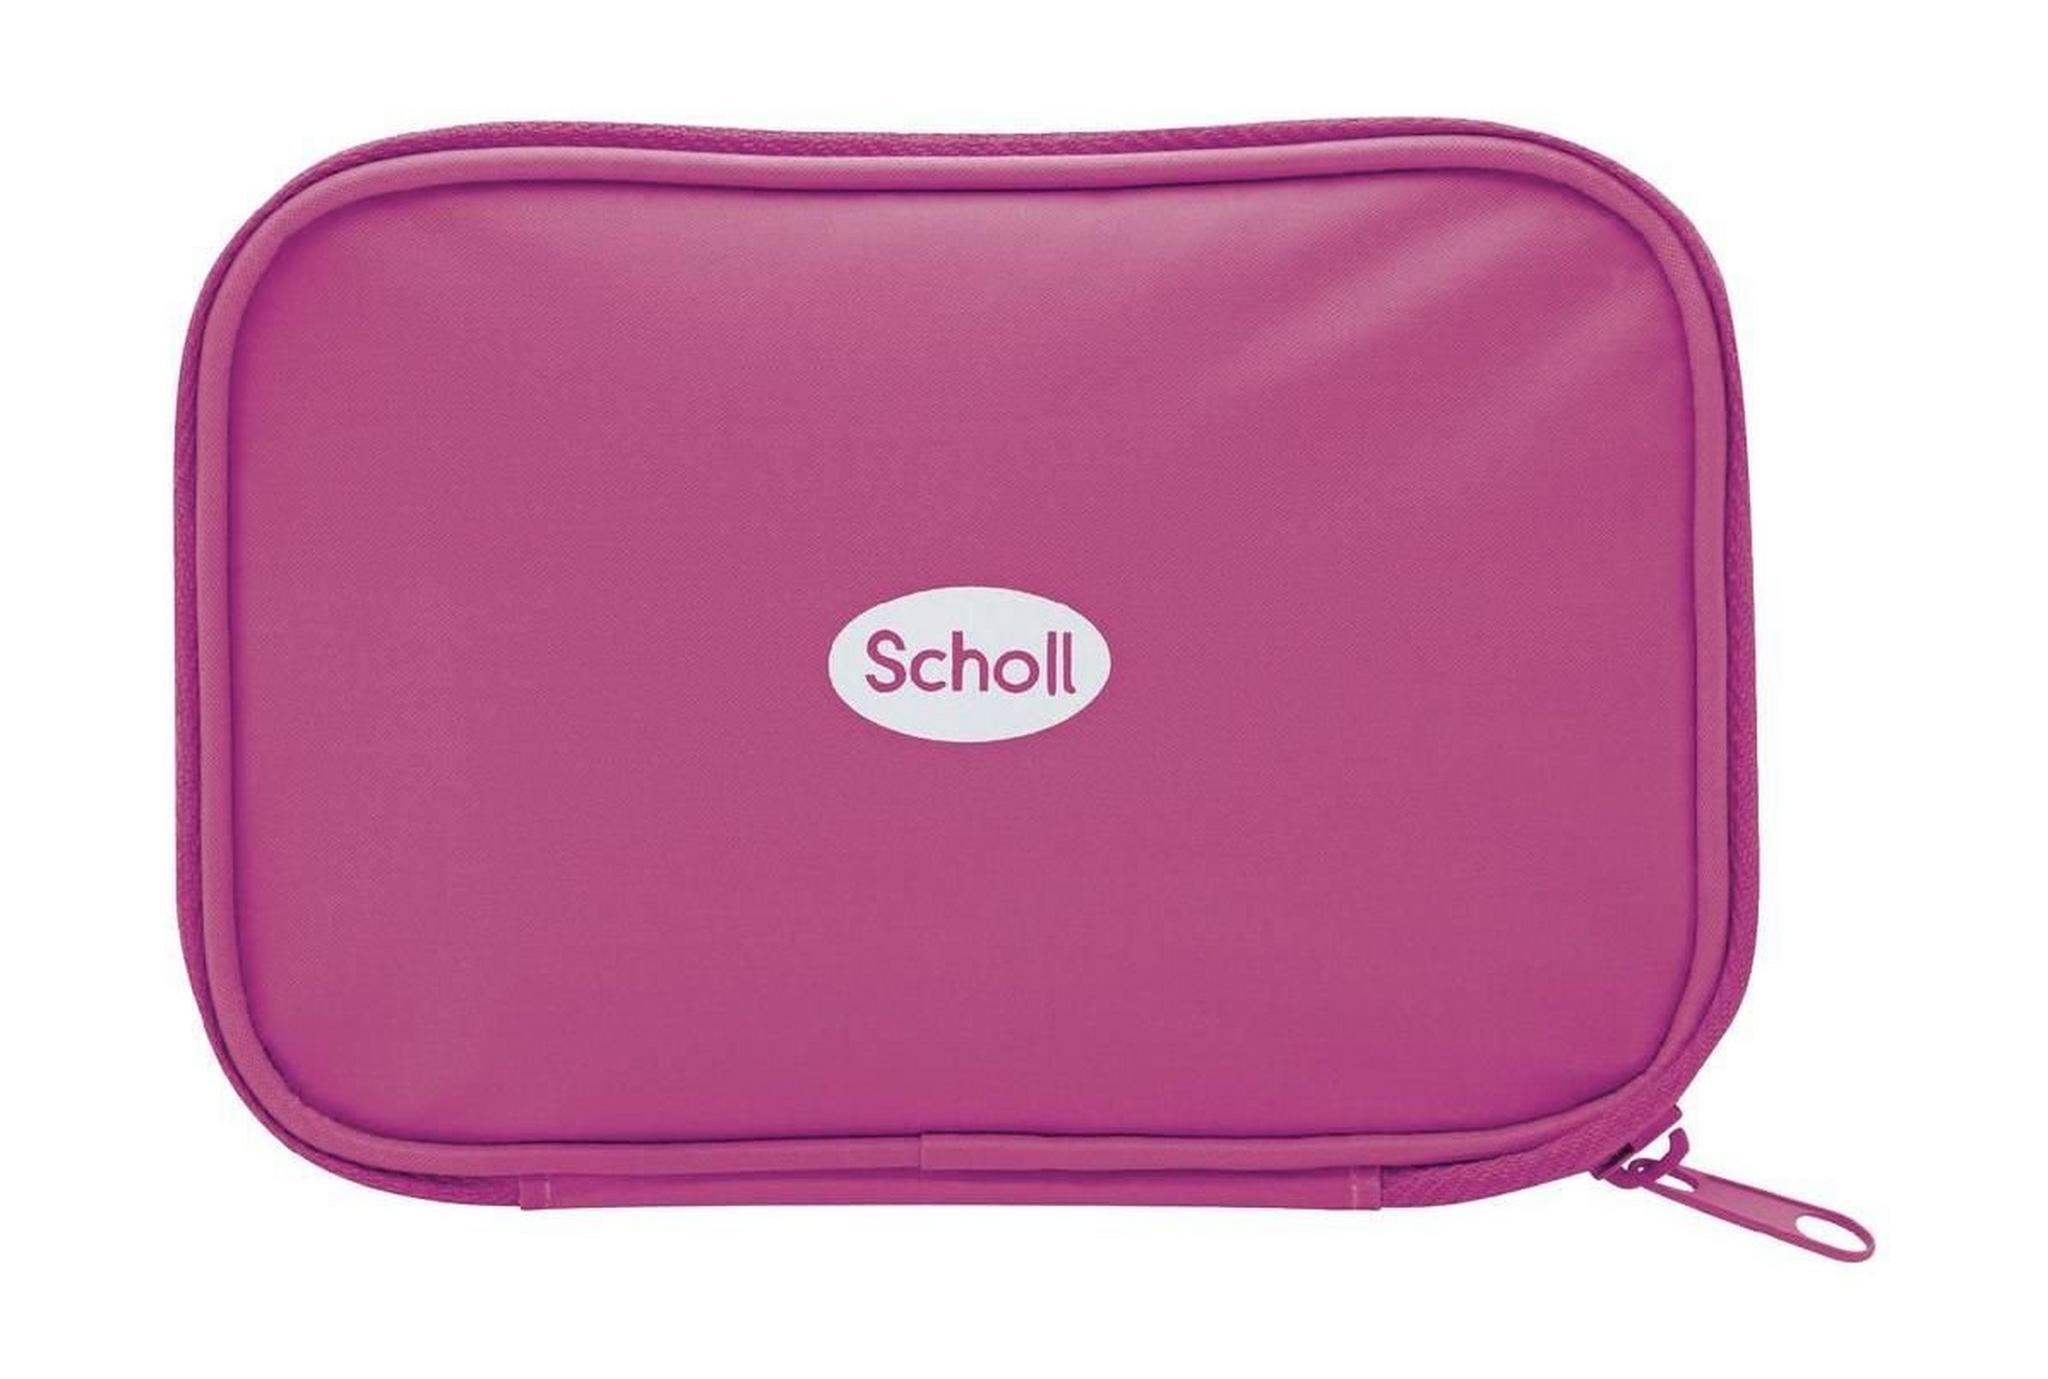 Scholl Travel Manicure & Pedicure Set (DRSP3856PUK1) - Pink